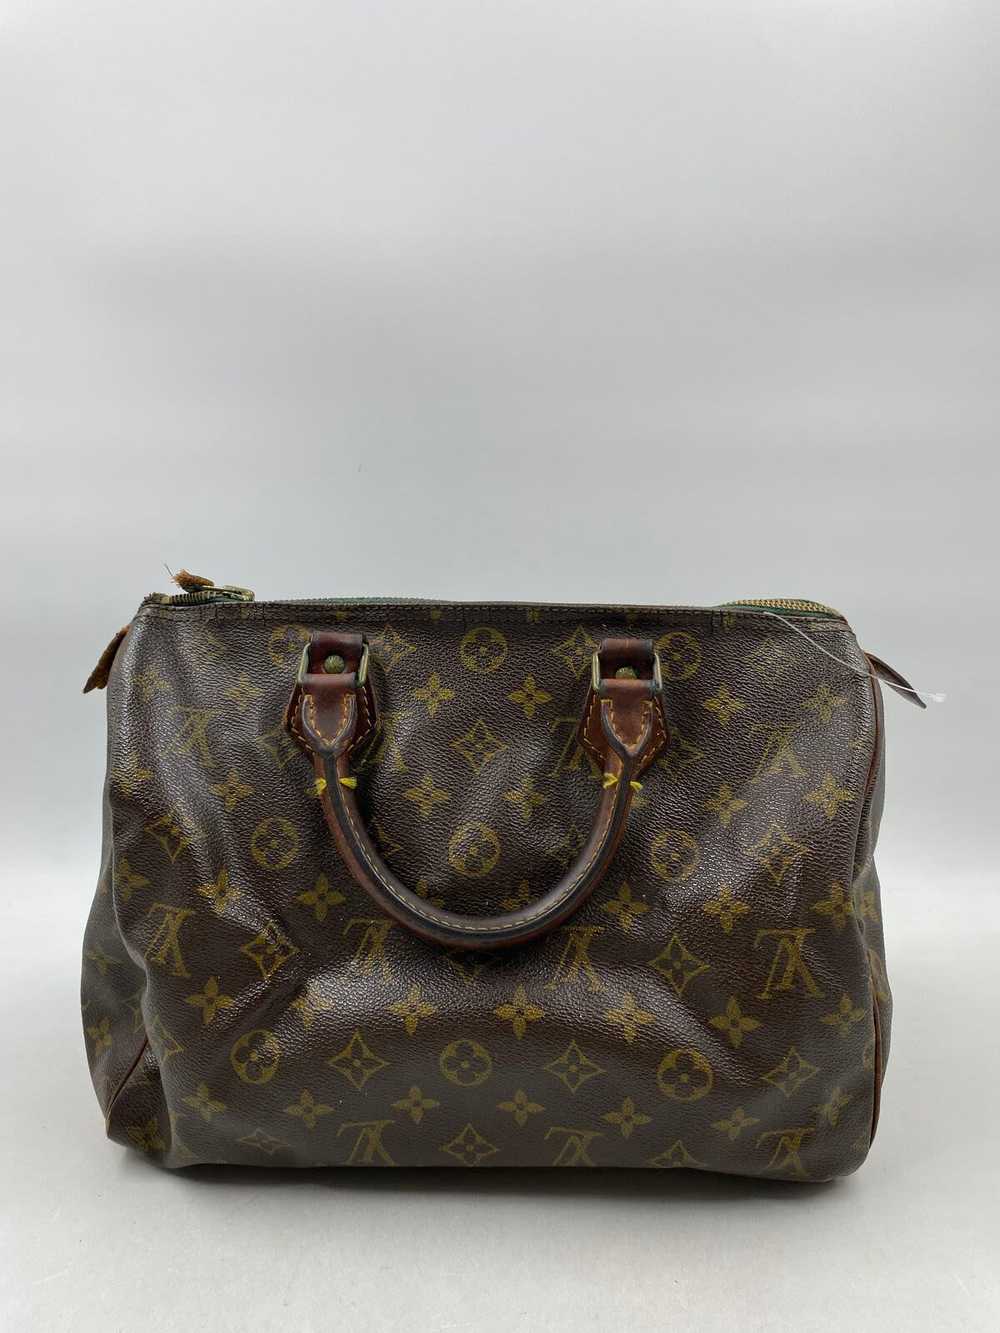 Authentic Louis Vuitton Brown Handbag - image 2